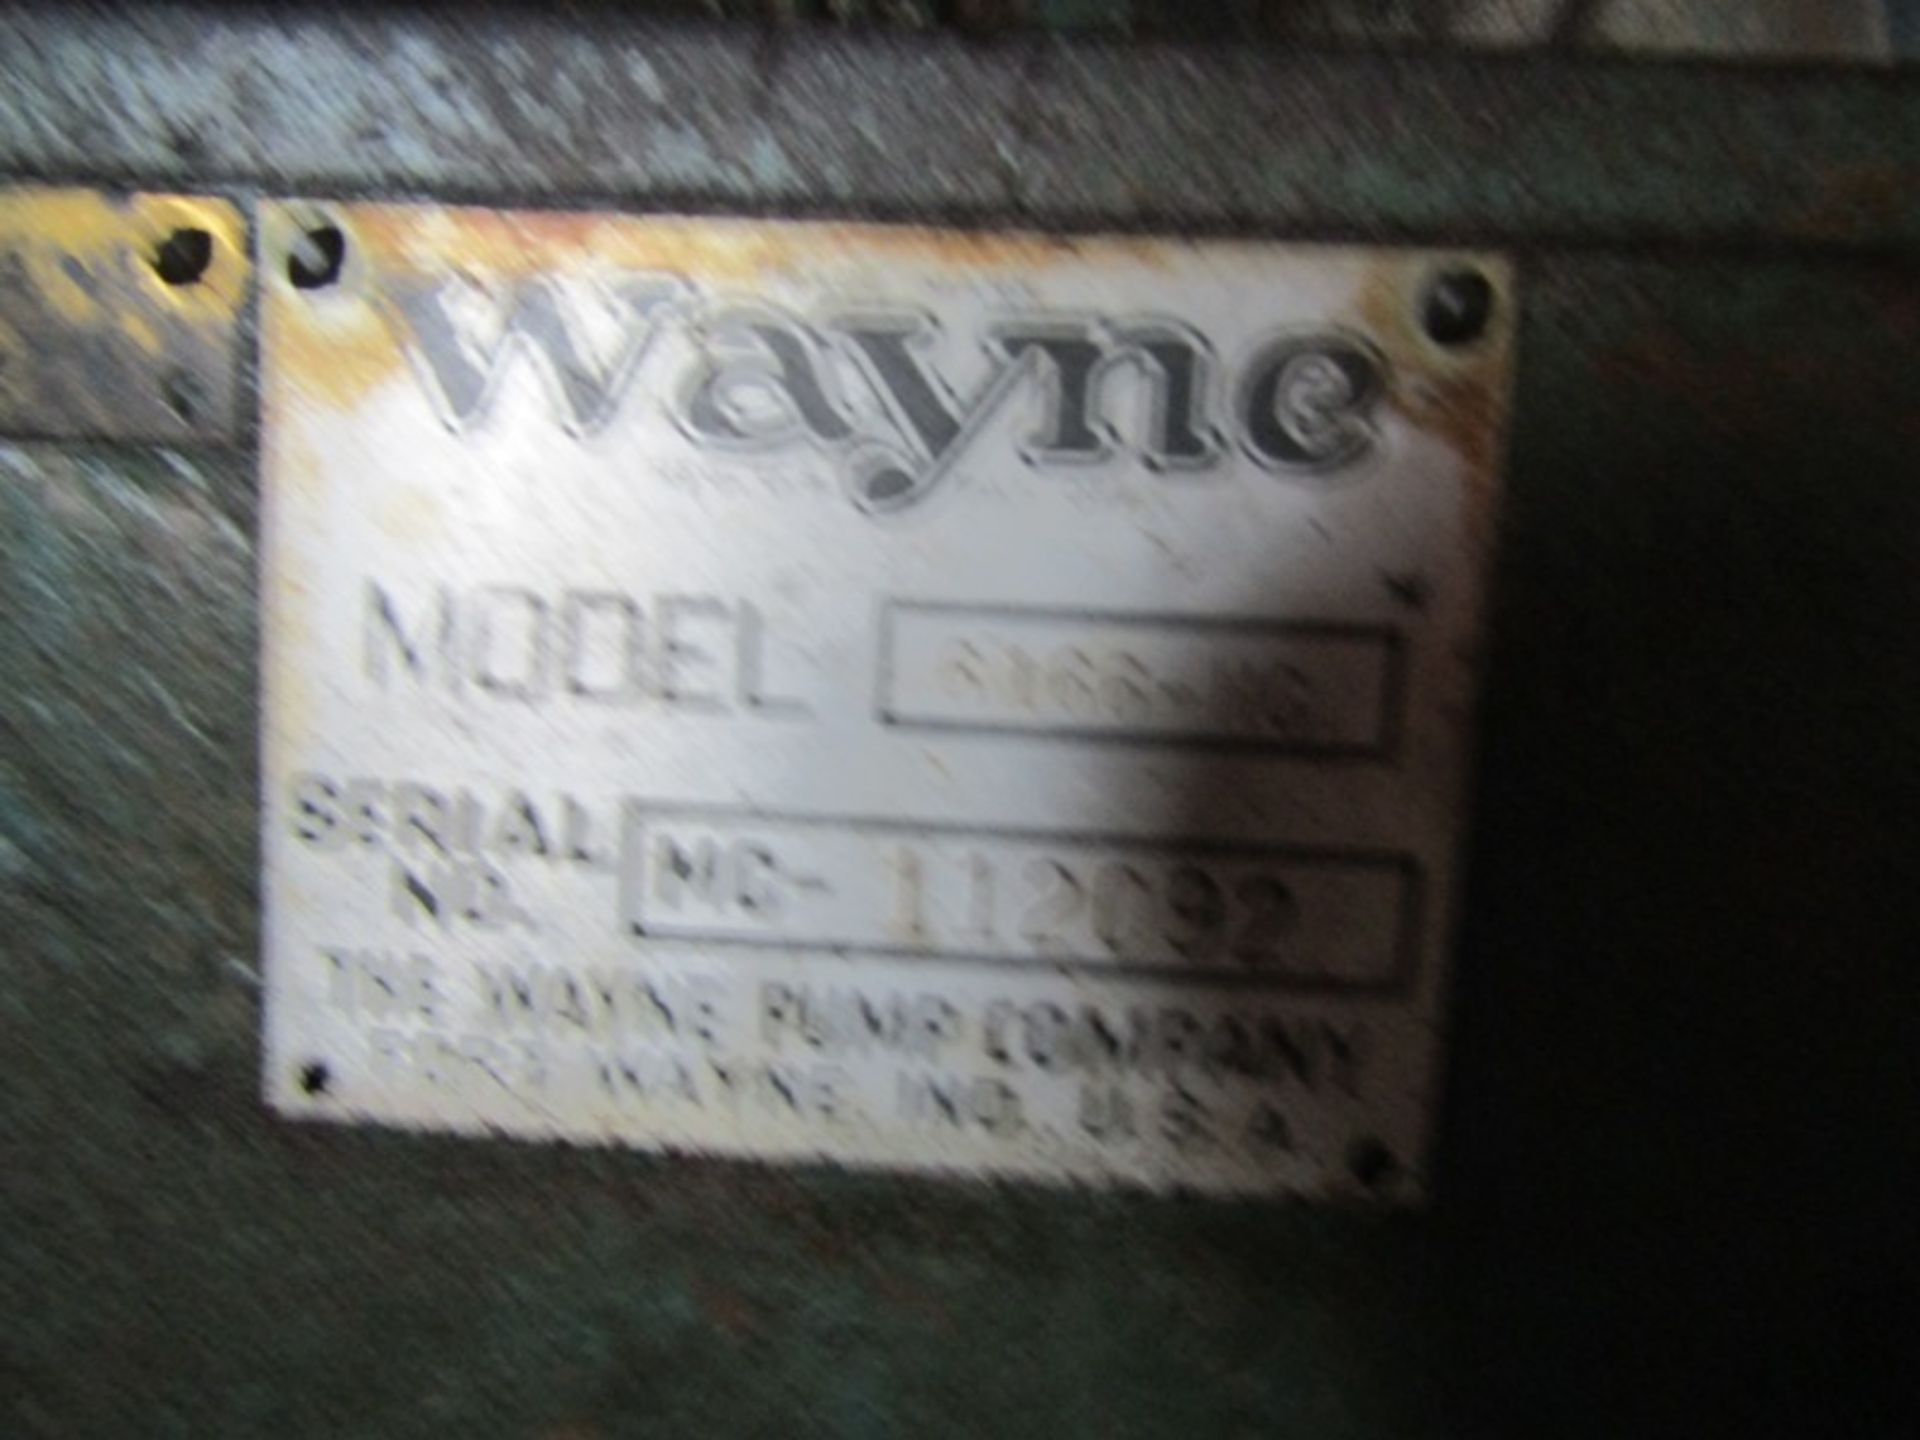 Wayne Gas Air Compressor - Image 2 of 3